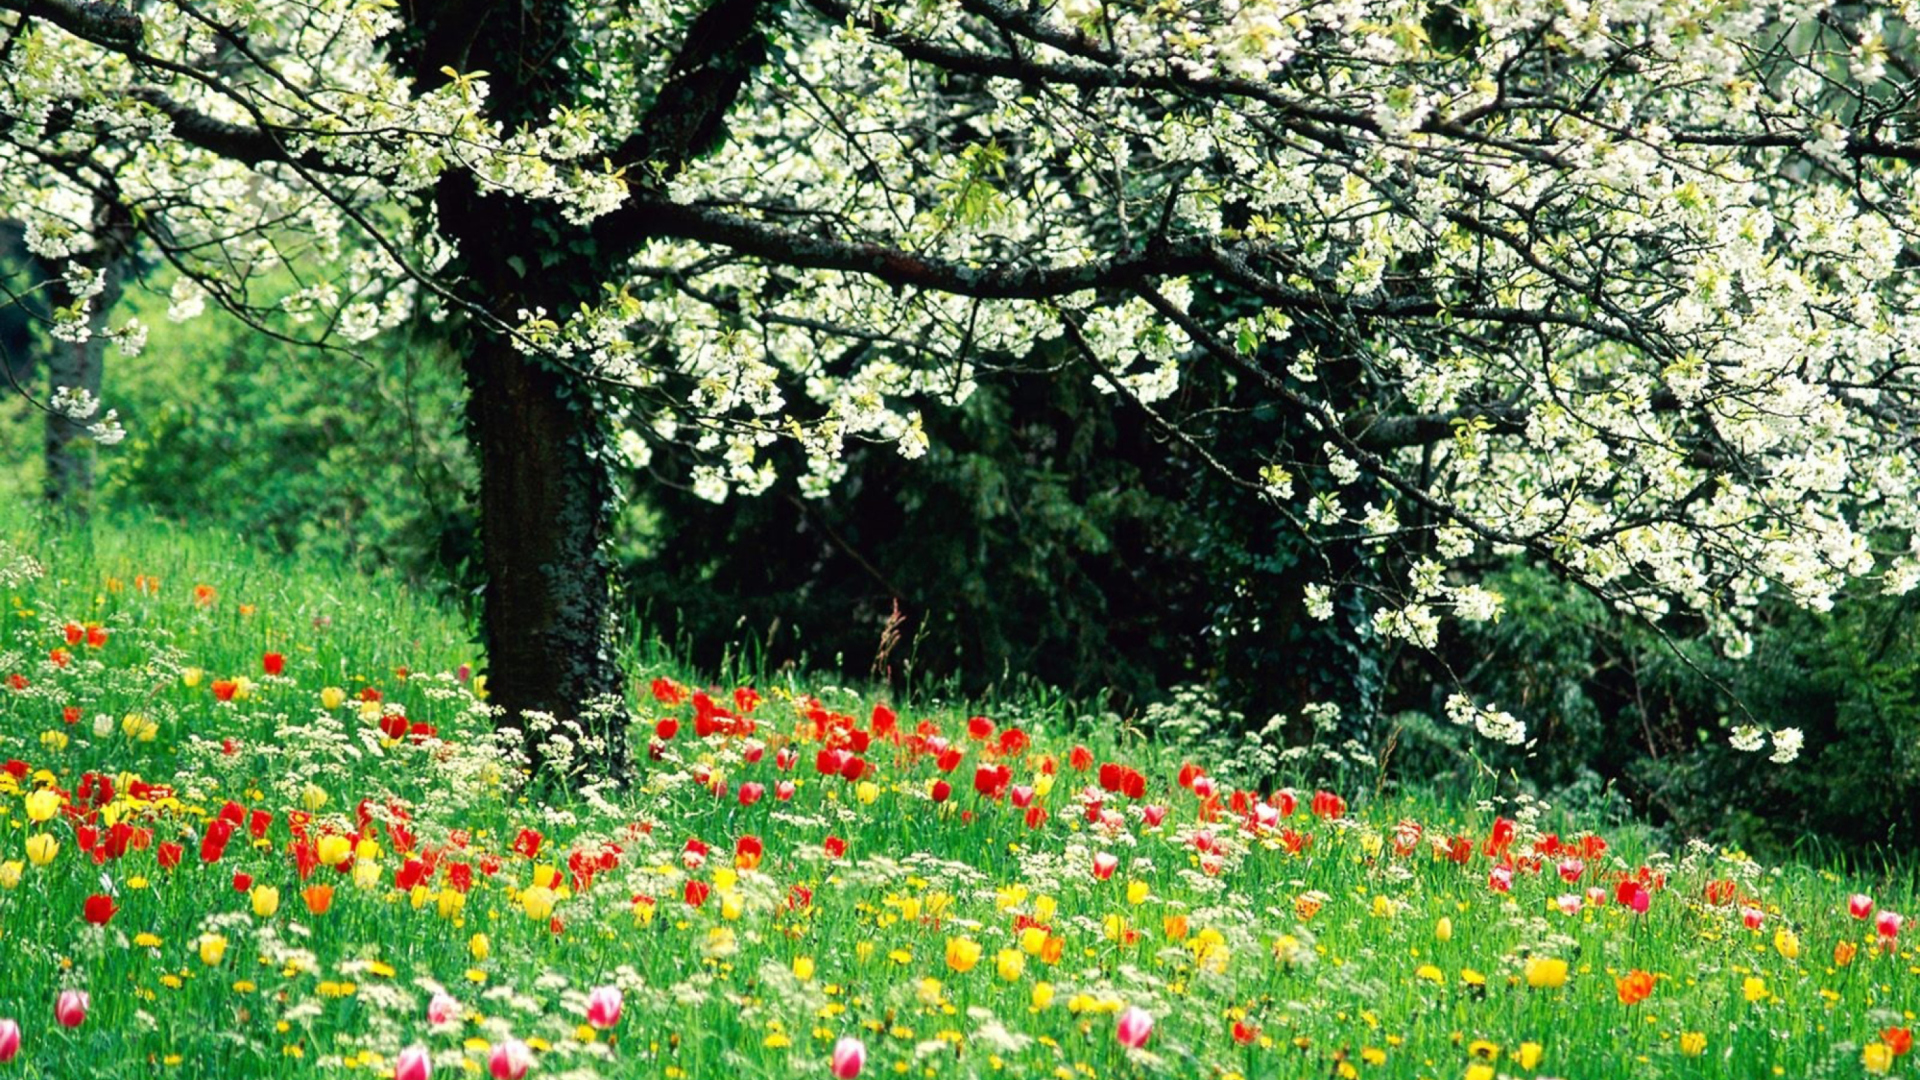 Spring Forest Flowers Wallpaper for Desktop 1920x1080 Full HD